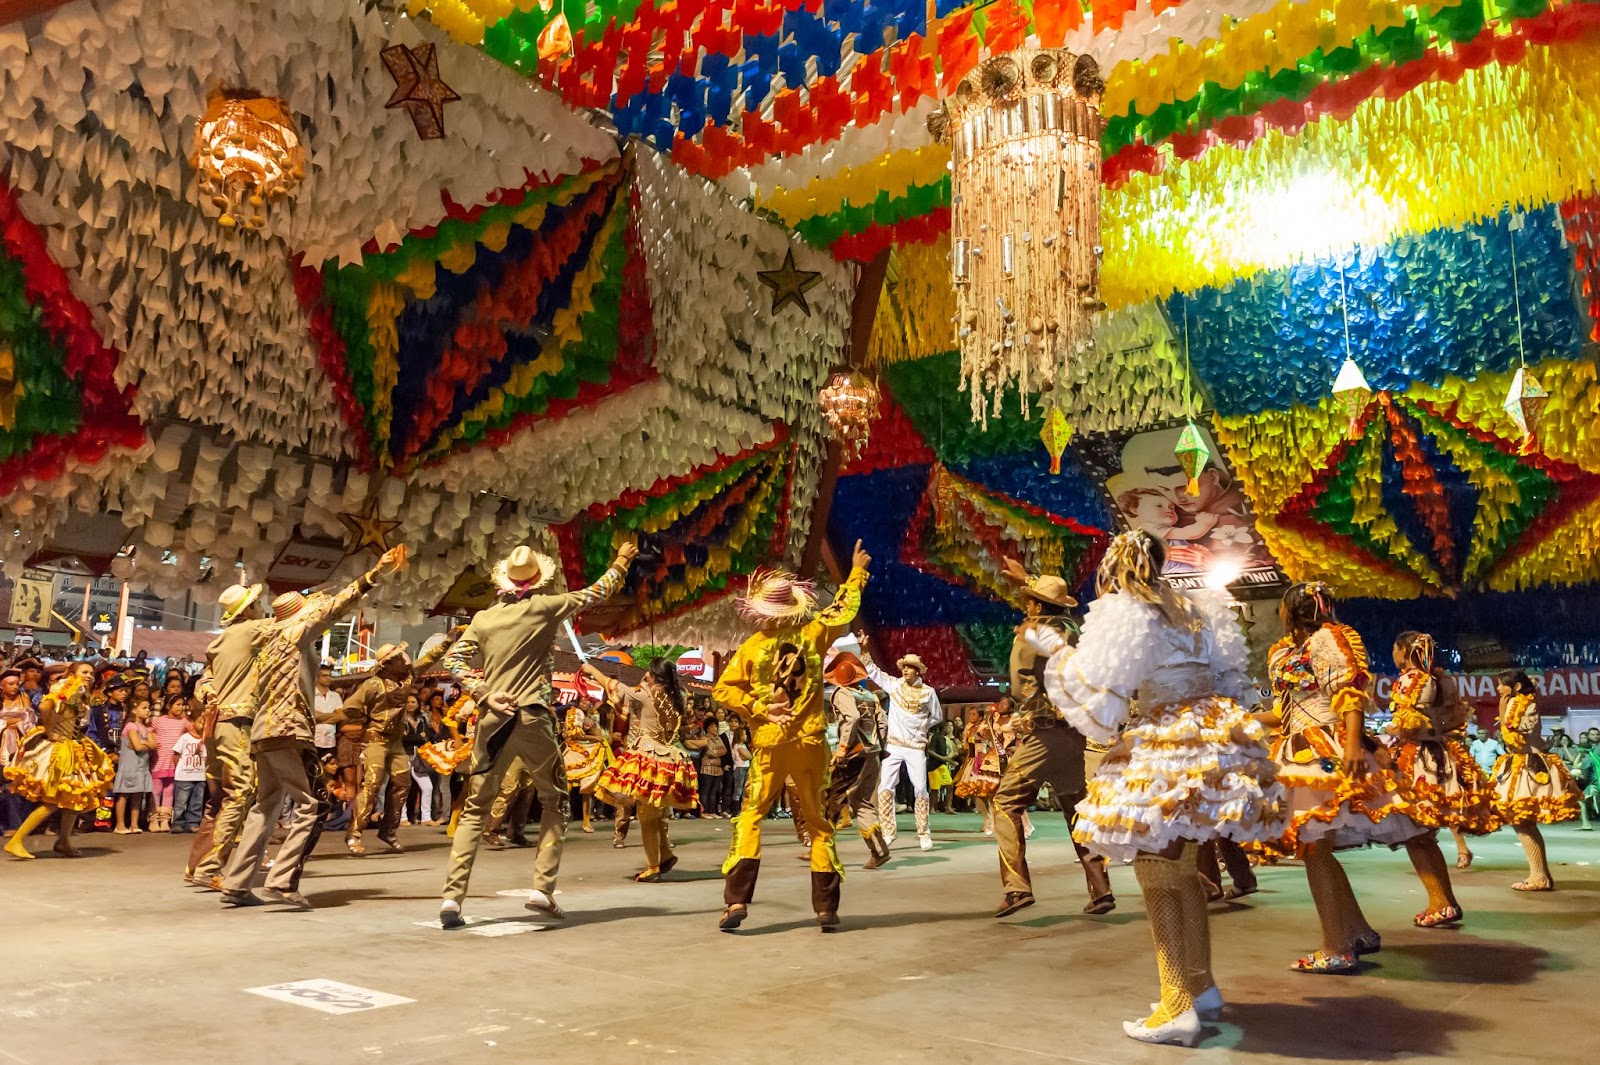 Quadrilha no São João de Campina Grande. Usando vestidos rodados e chapéus coloridos, os participantes dançam em roda na Praça do Povo. O teto está coberto por bandeiras coloridas e balões decorativos.